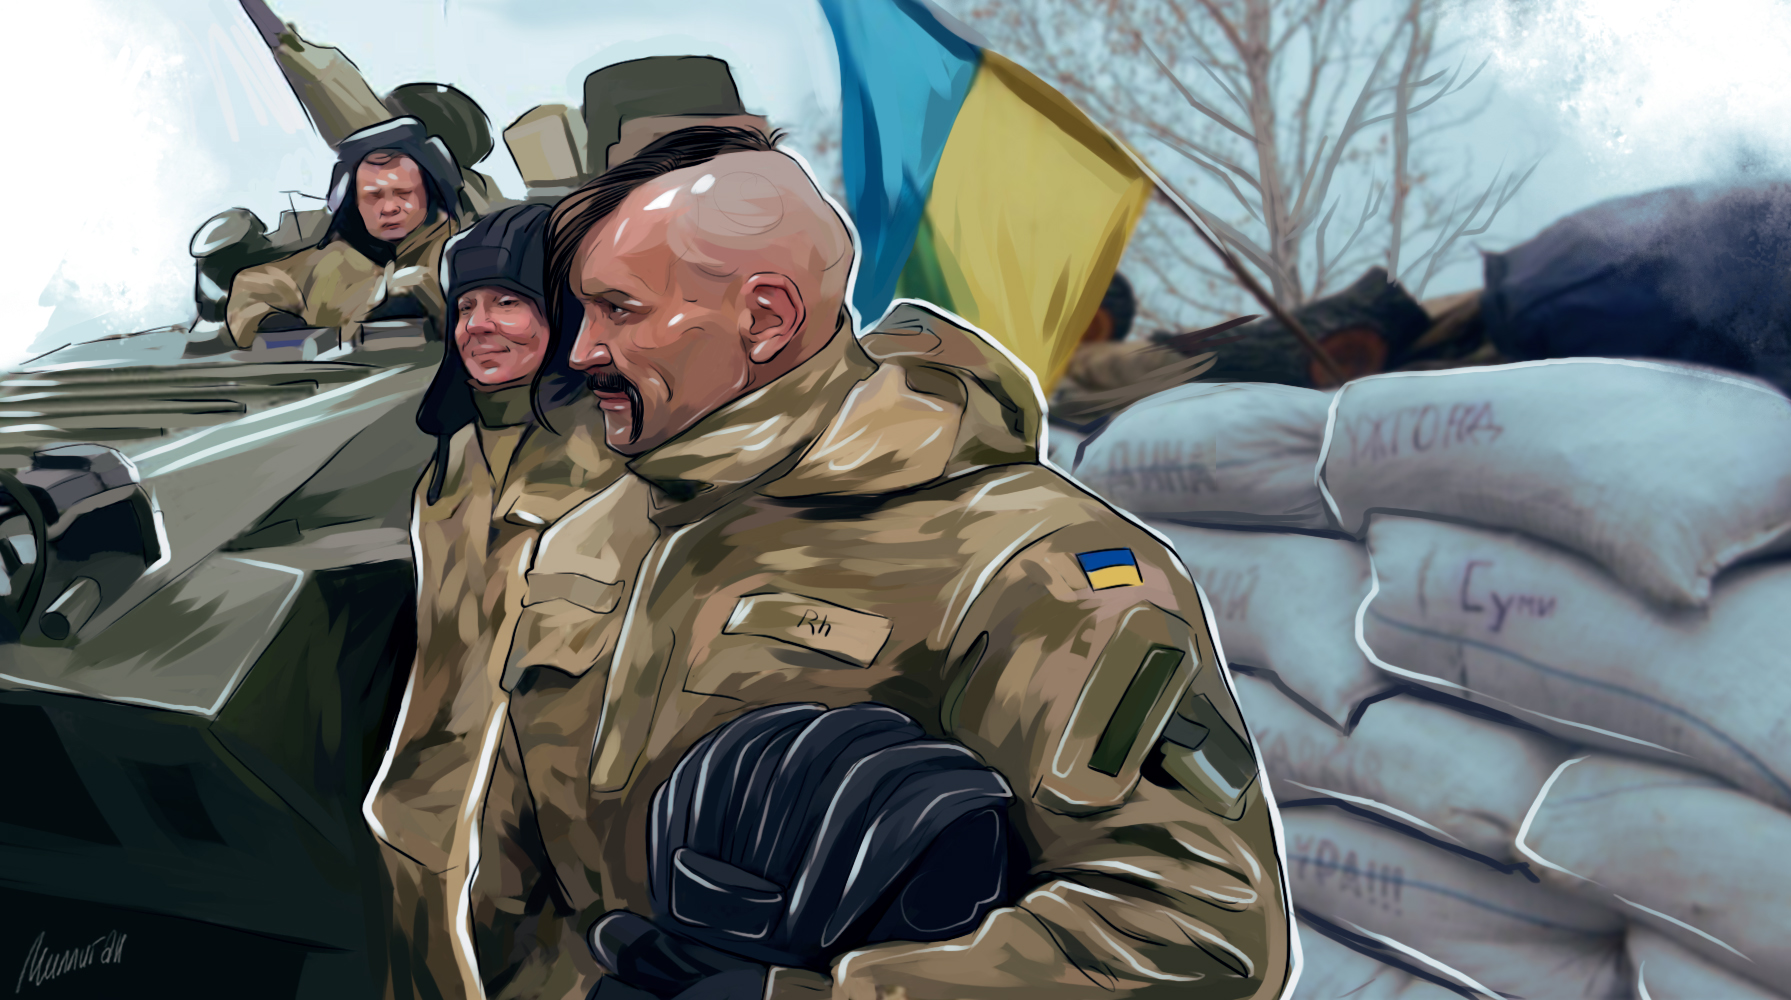 The American Conservative: Украина усиливает эскалацию на Донбассе. США должны четко объяснить ей, что никакой поддержки не будет